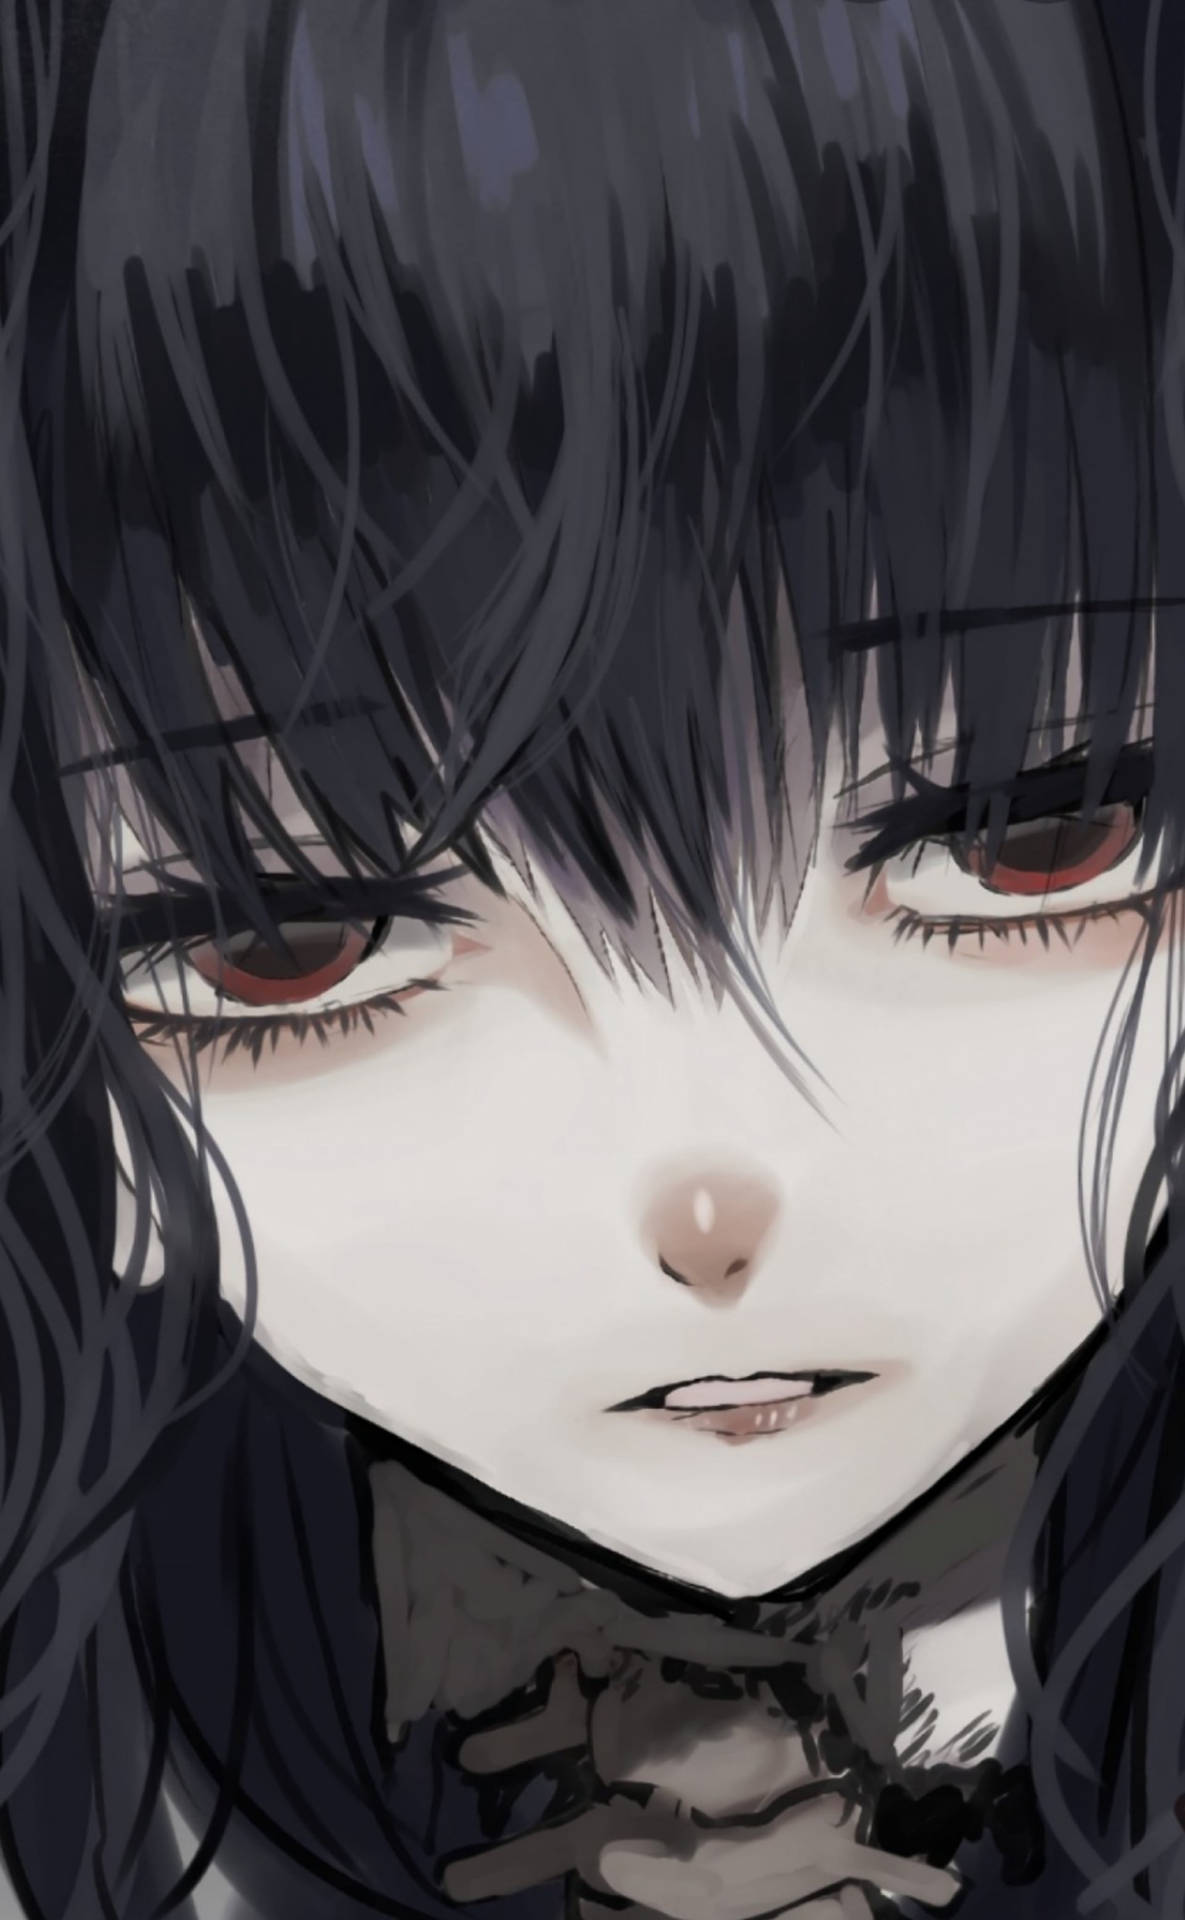 Goth teen anime girl ilustração do Stock | Adobe Stock-demhanvico.com.vn